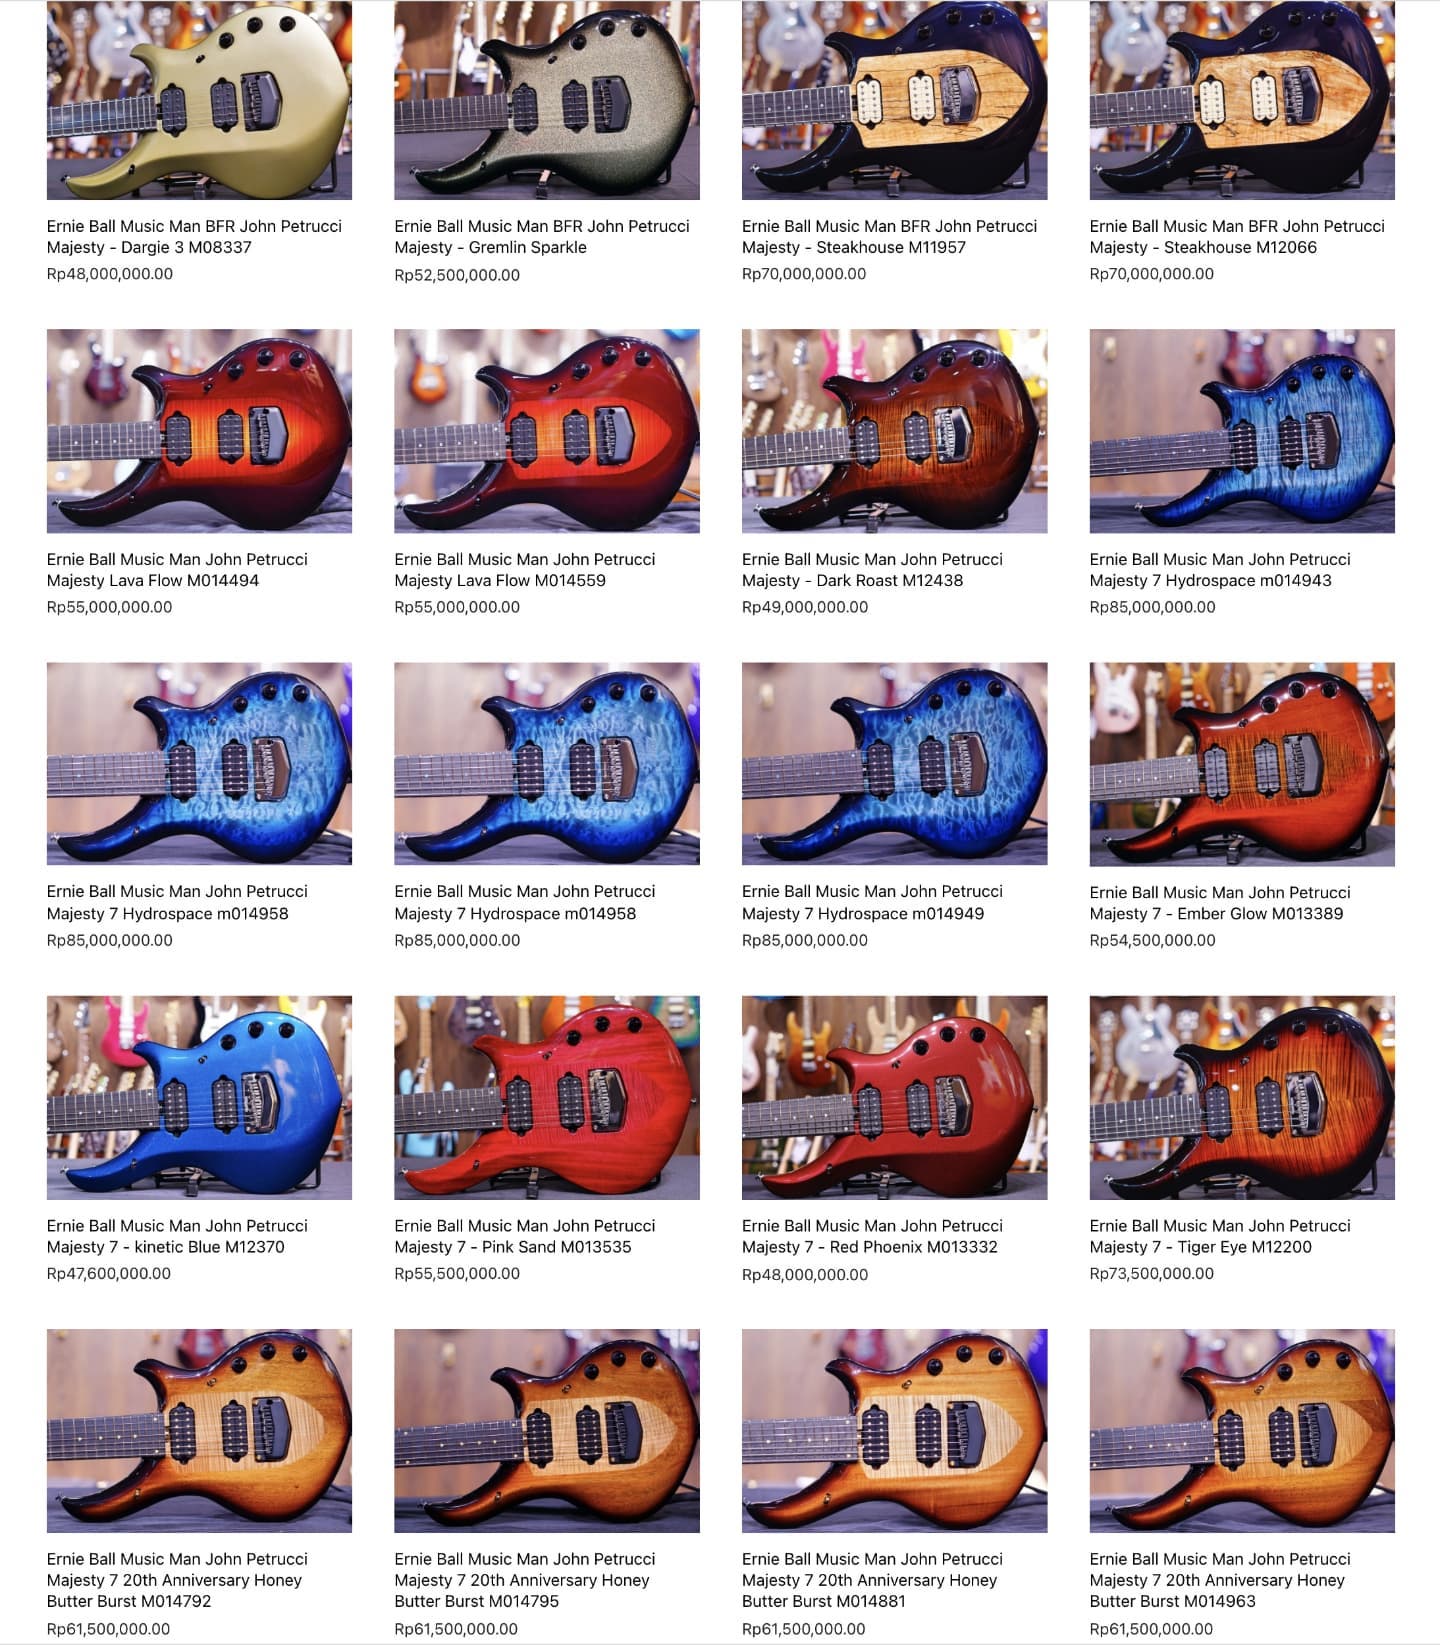 We have more JP guitar...